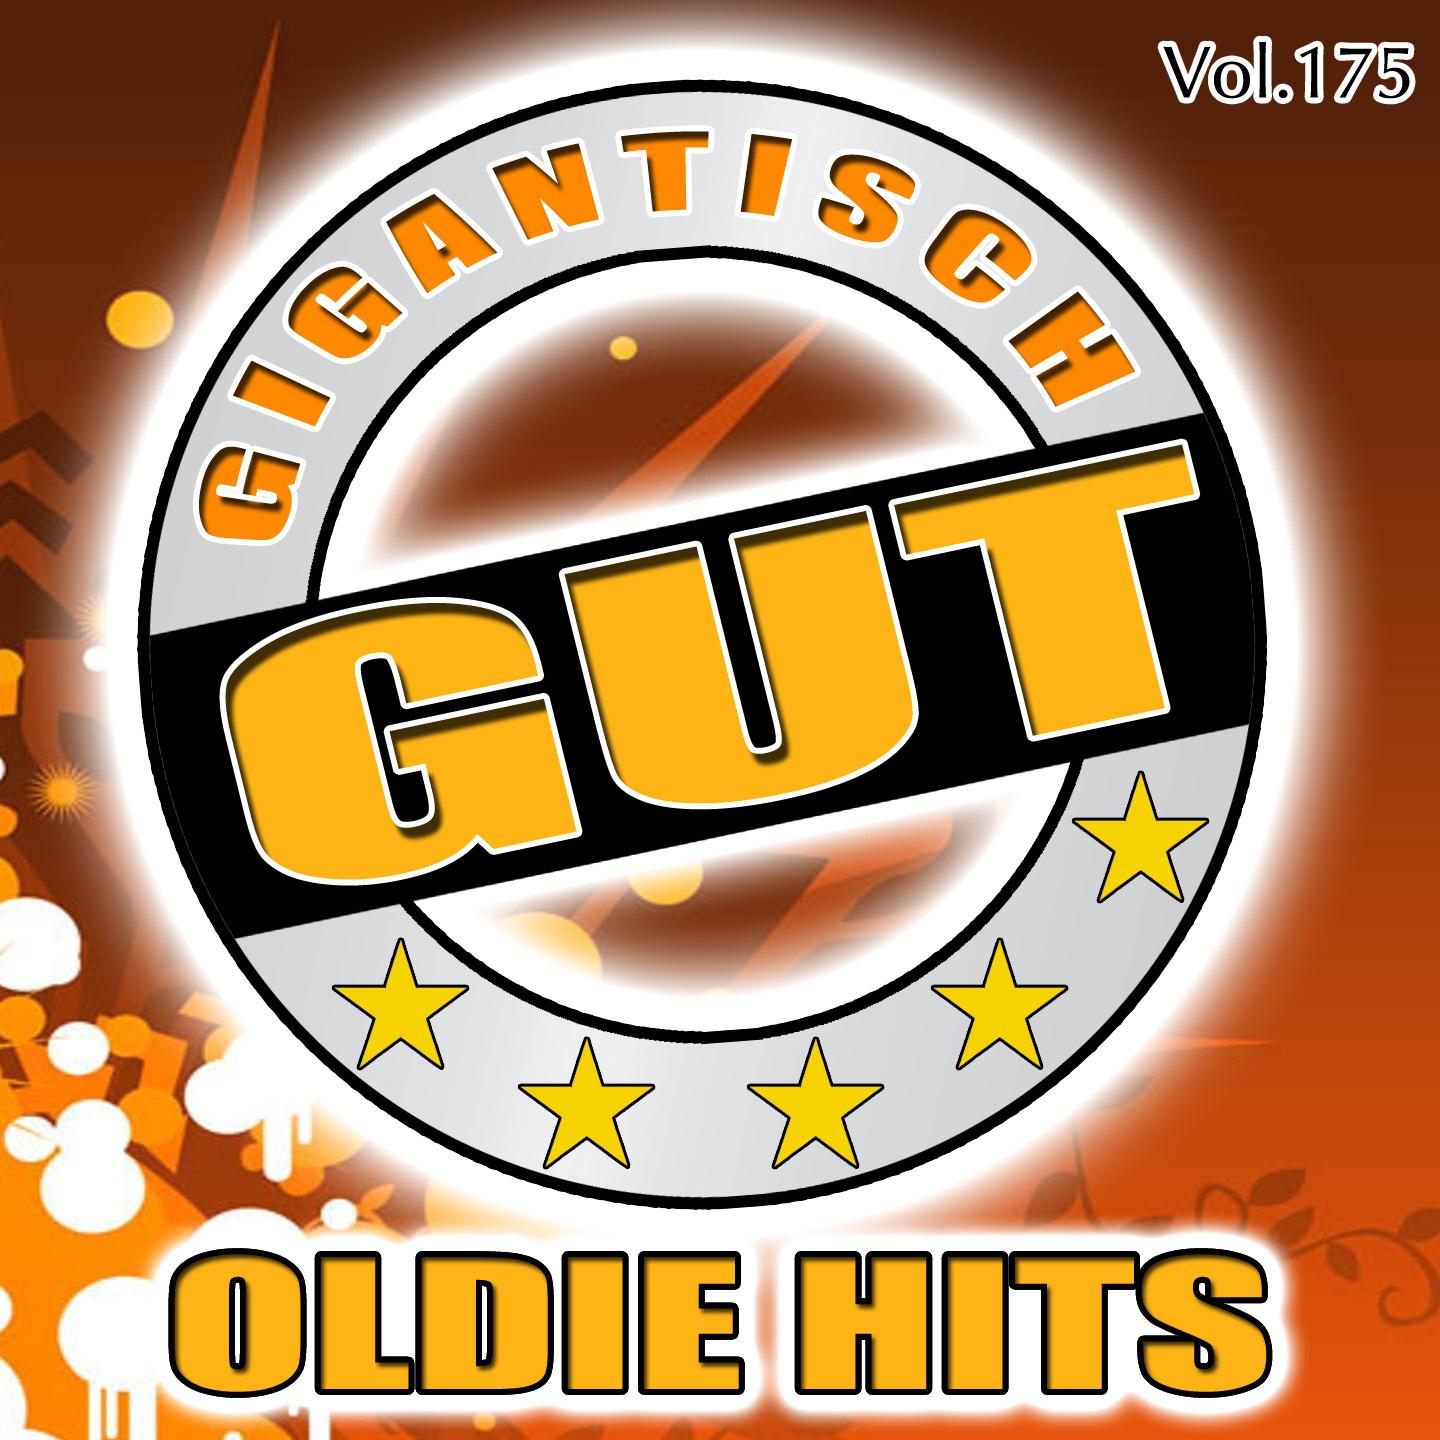 Gigantisch Gut: Oldie Hits, Vol. 175